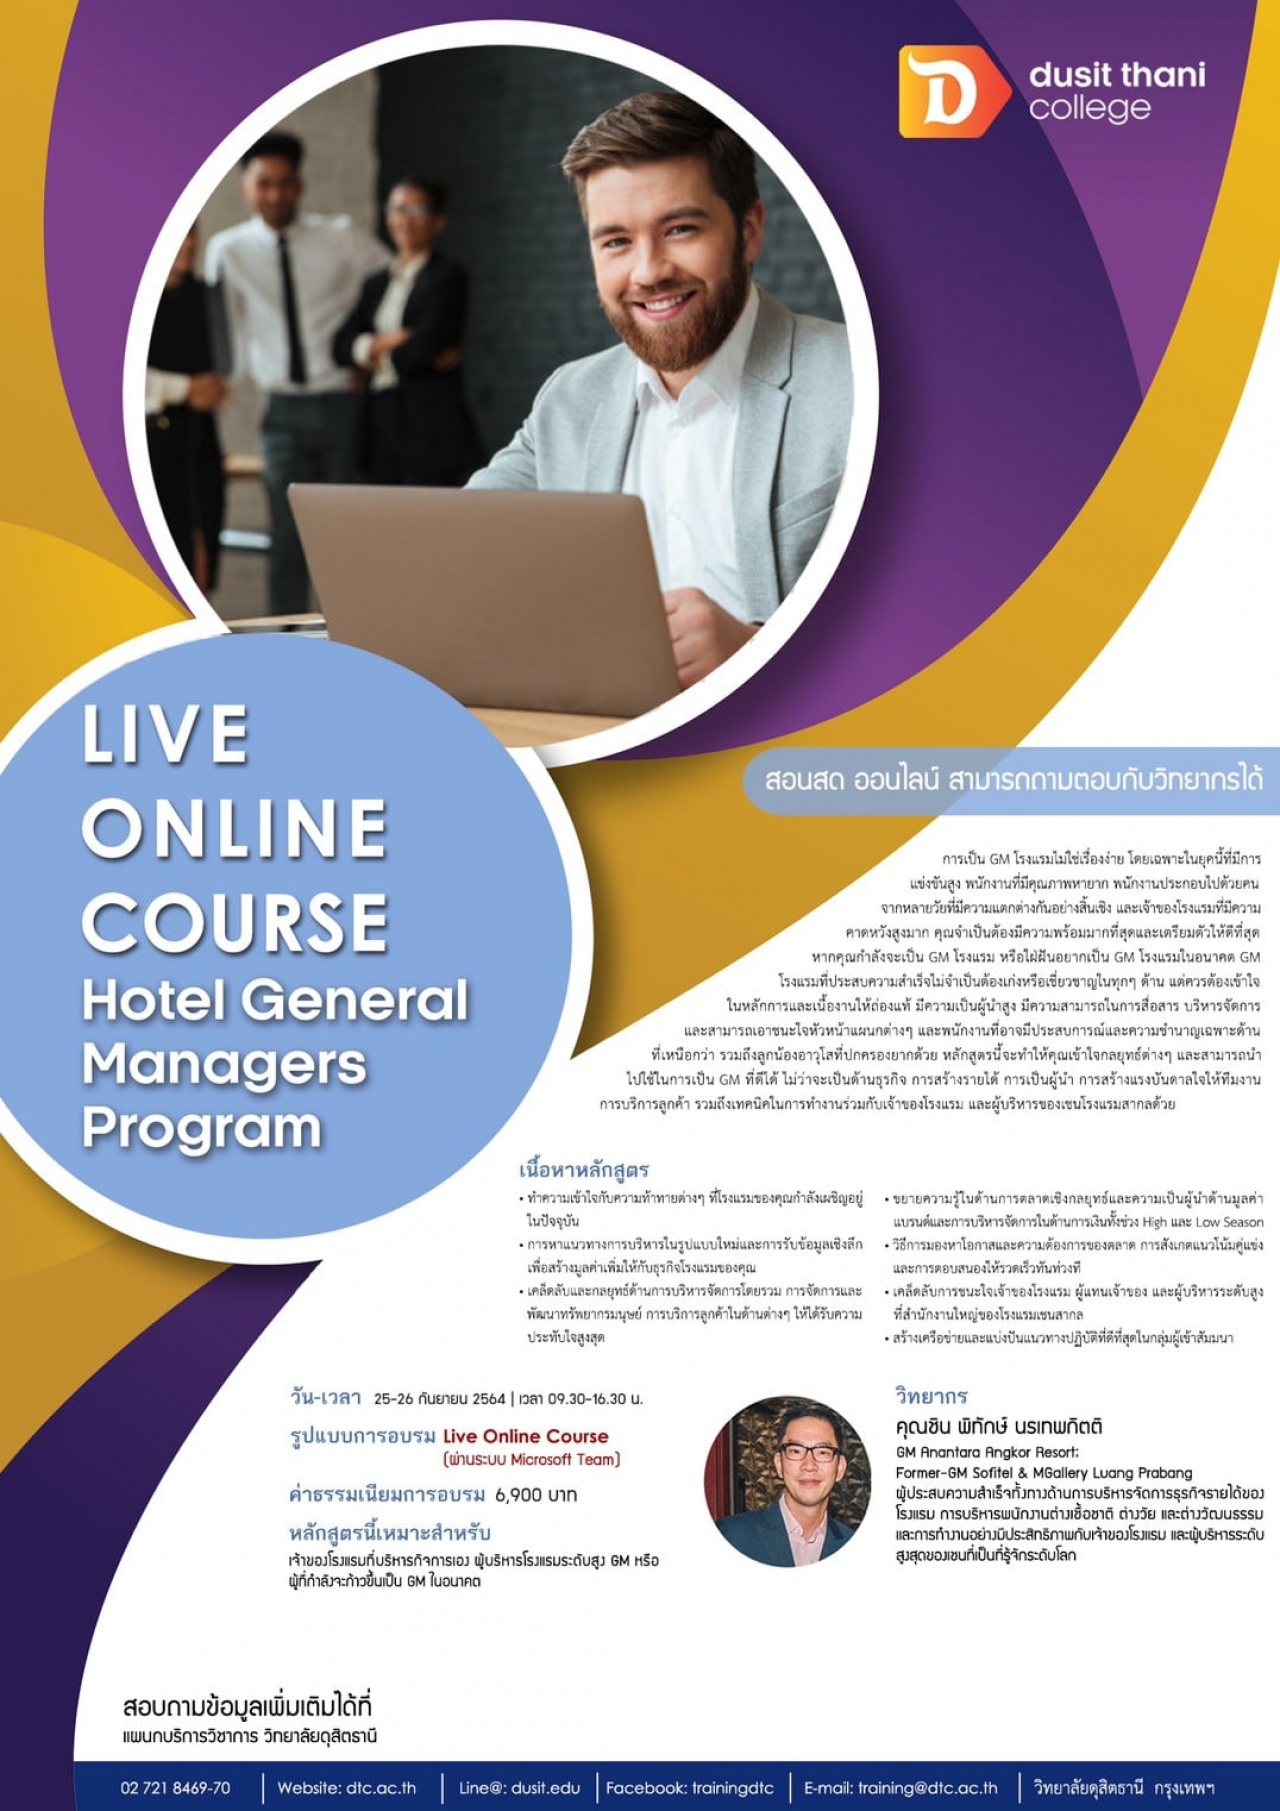 หลักสูตร Hotel General Managers Program (Live Online Course)